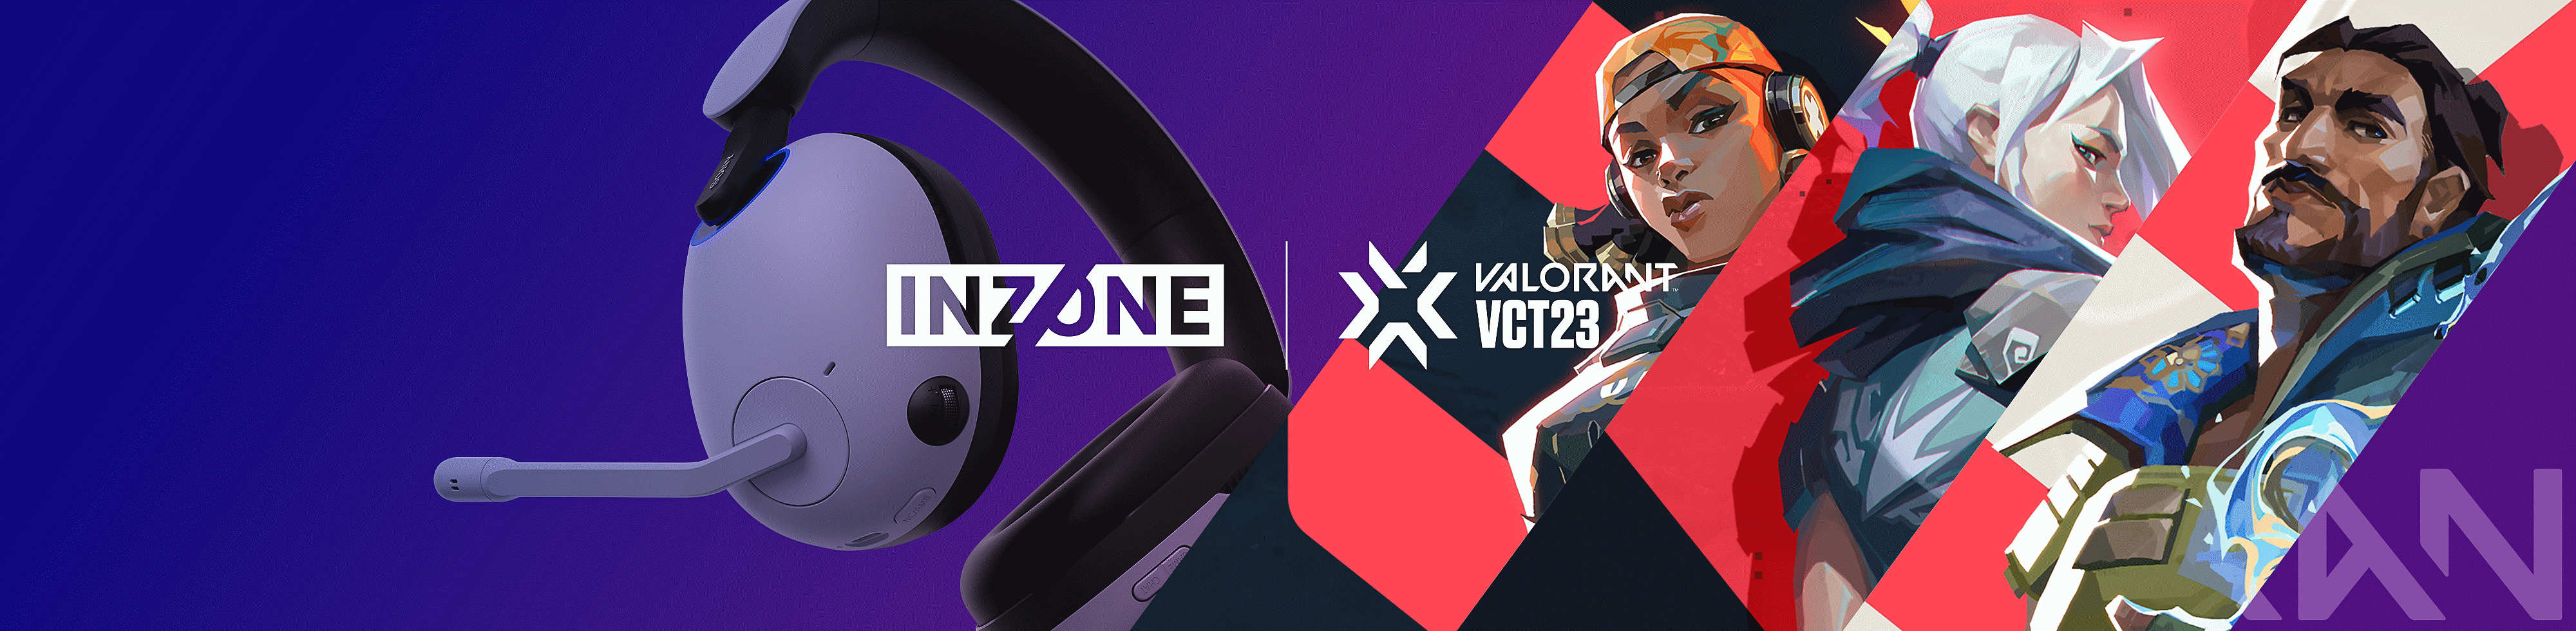 Εικόνα των ακουστικών κεφαλής για παιχνίδια INZONE H9 της Sony με χαρακτήρες από το VALORANT και λογότυπα INZONE και VALORANT VCT23